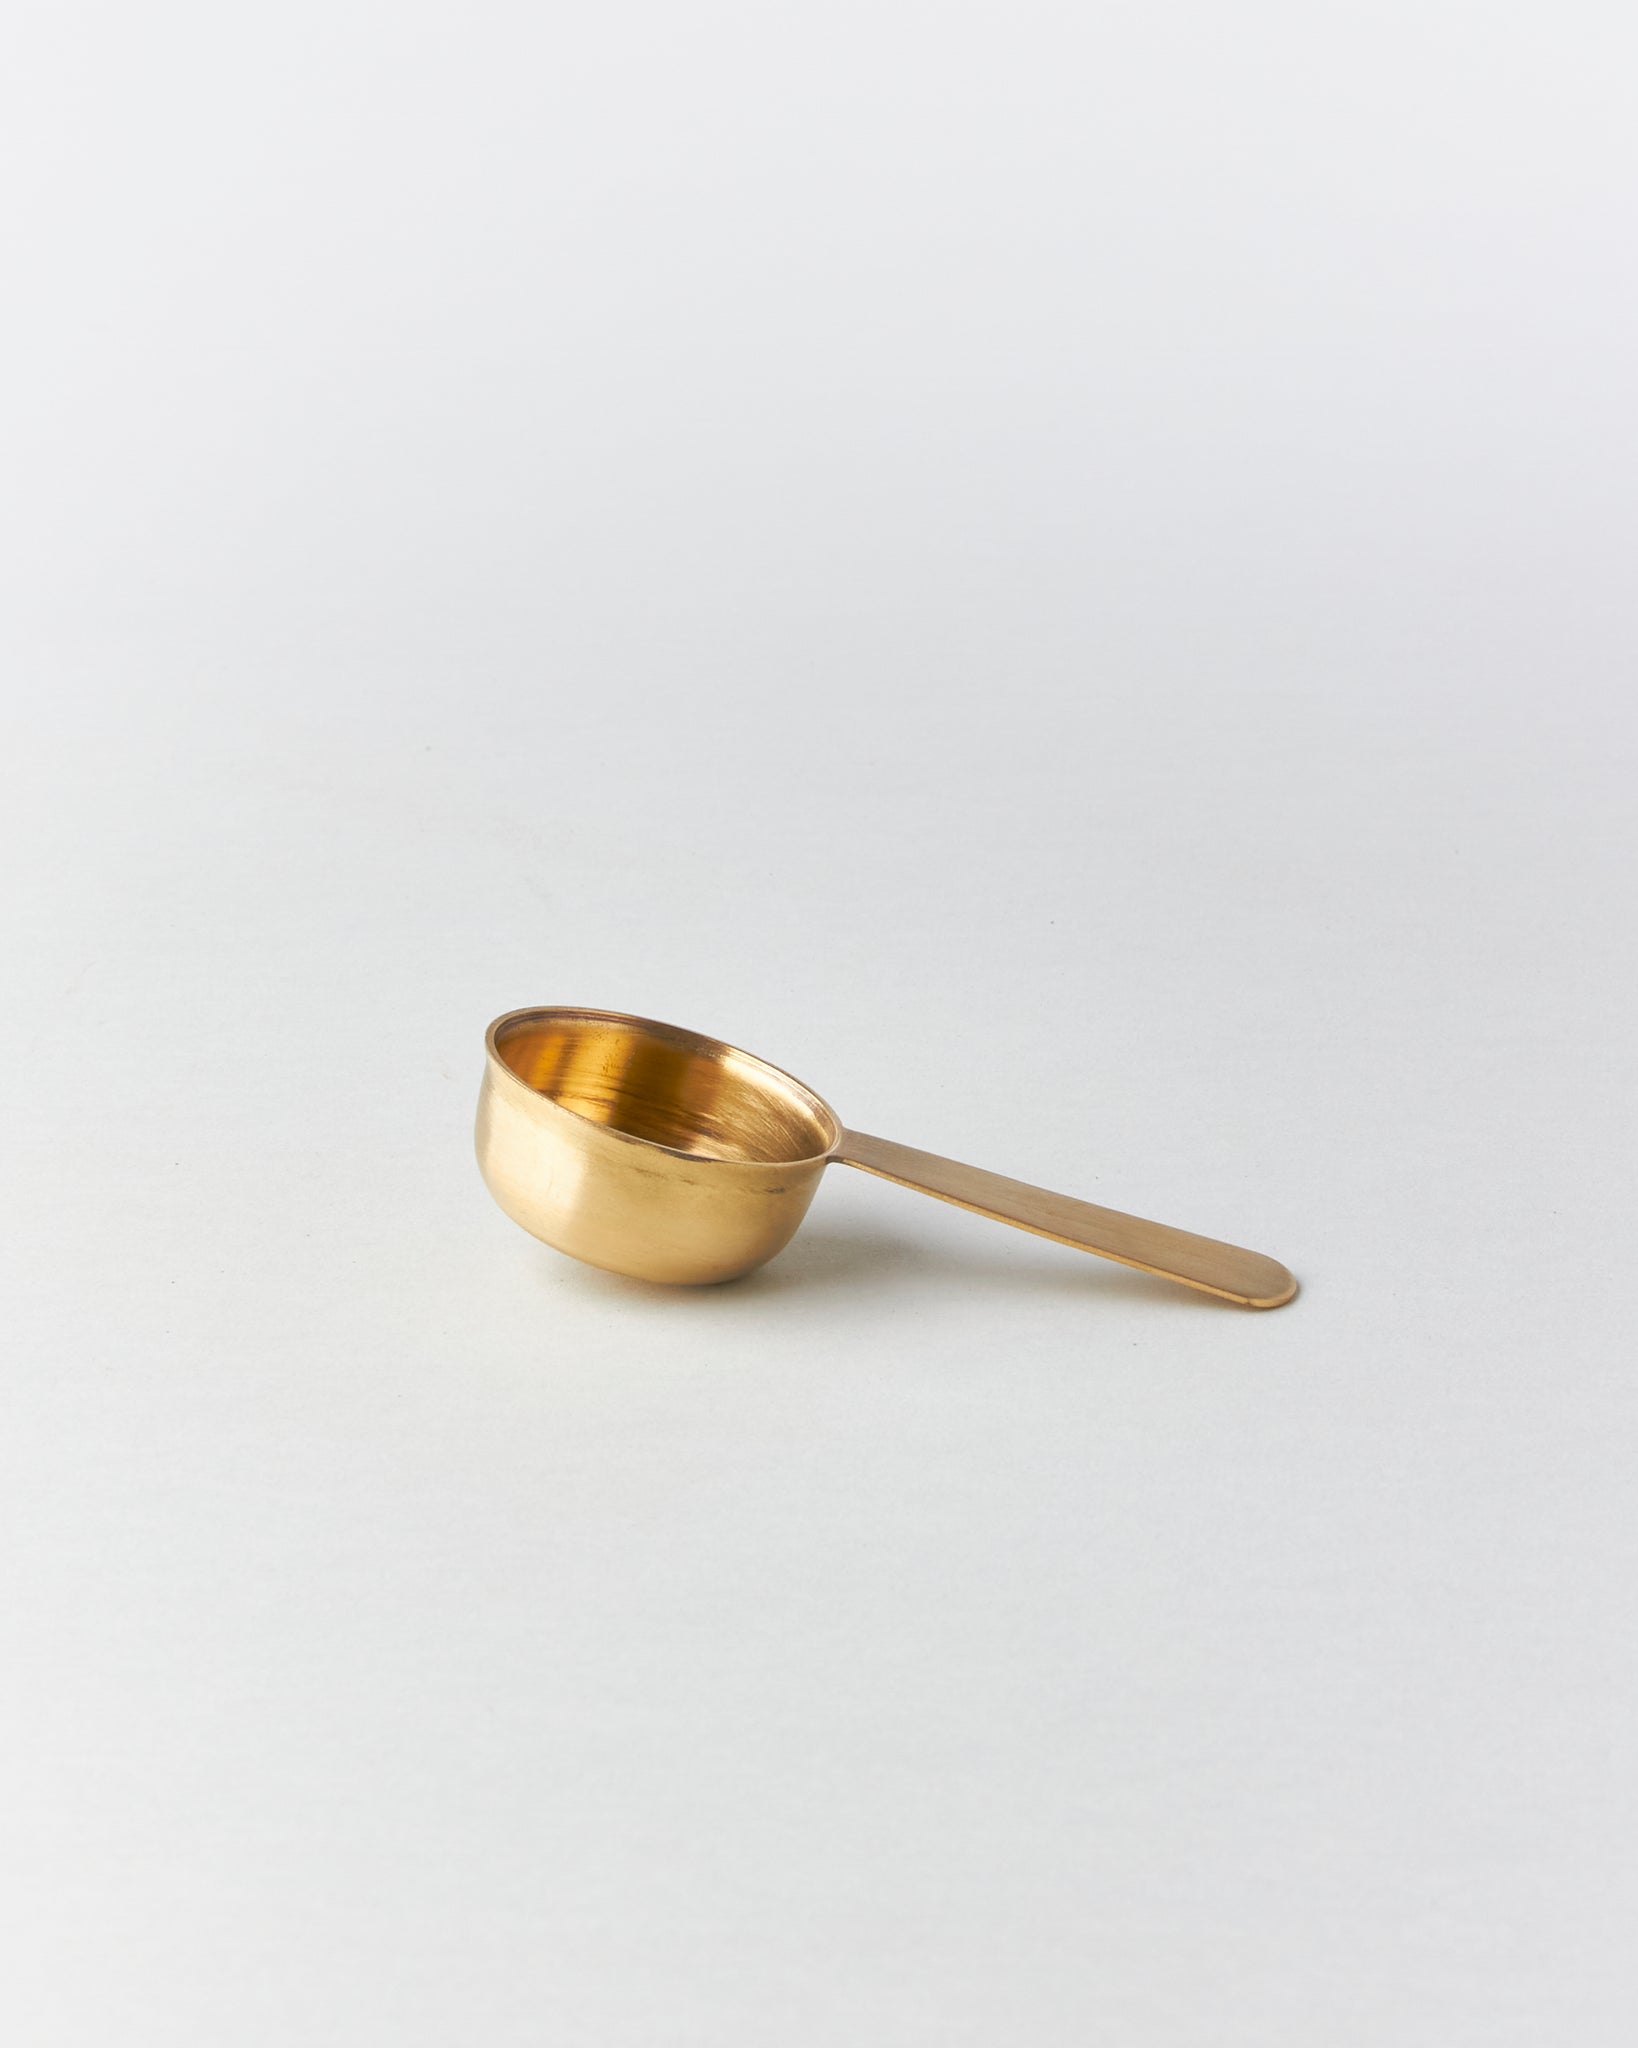 Brass Coffee Measure Spoon